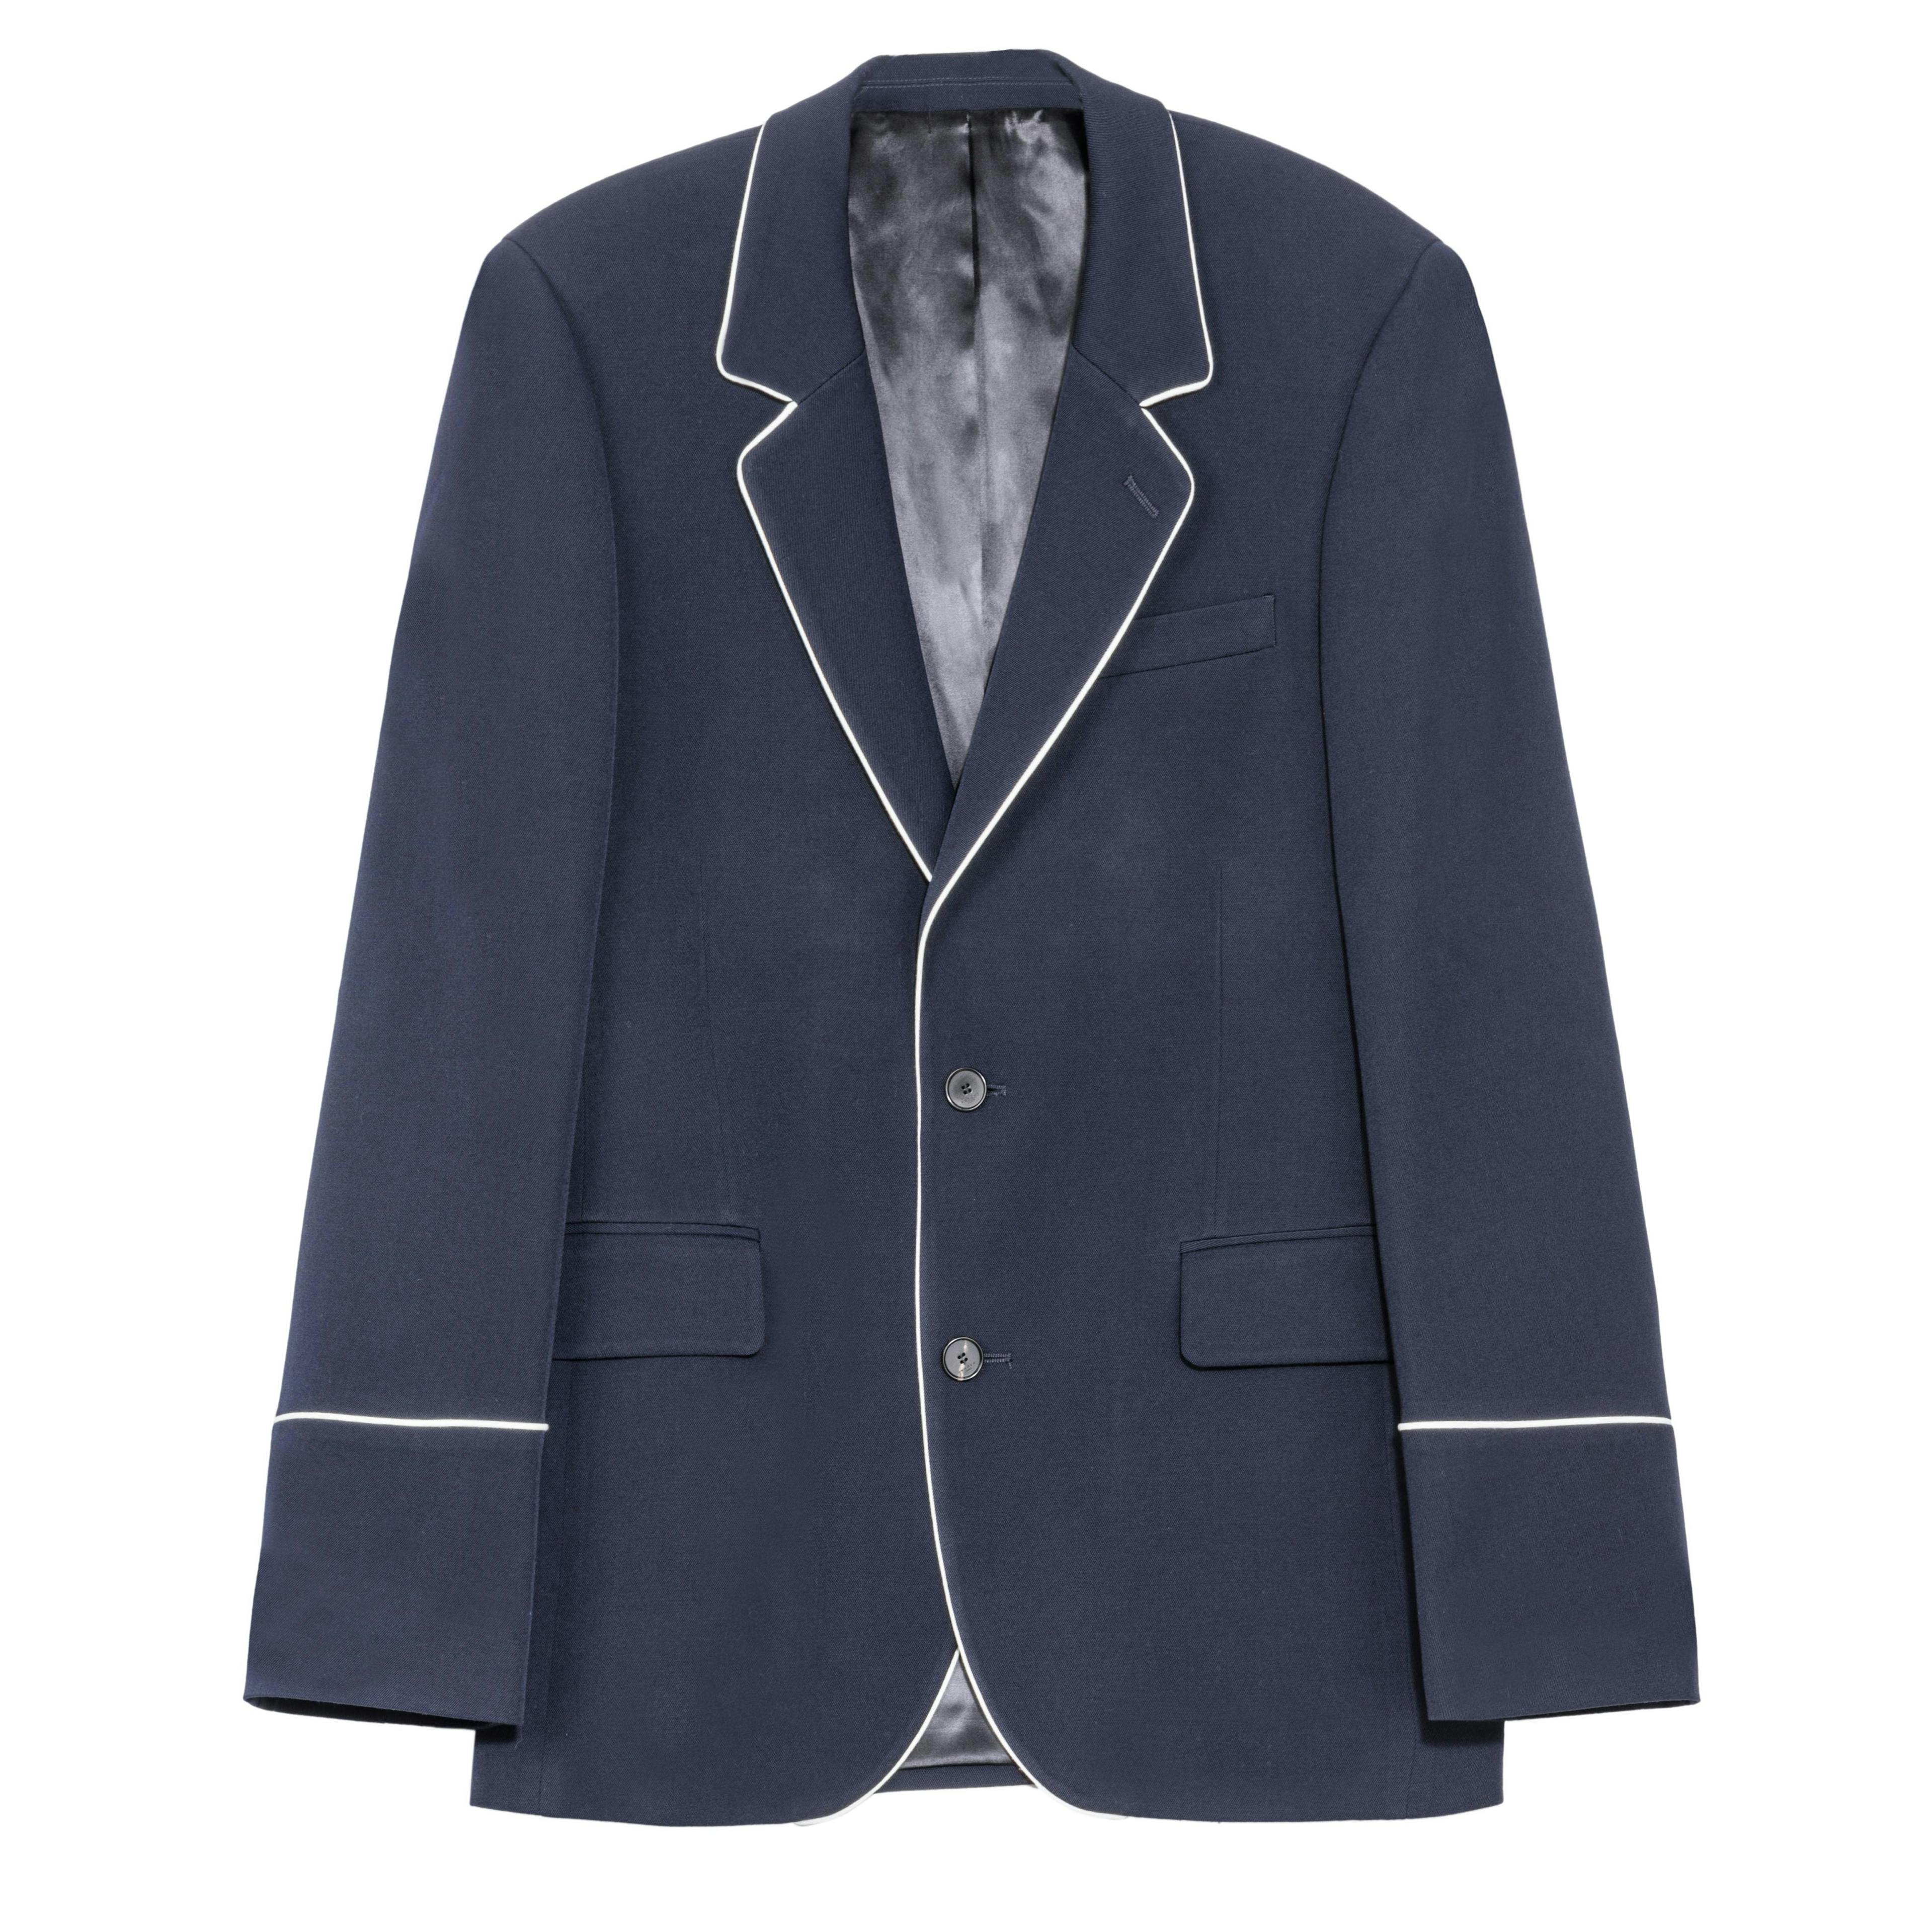 blazer clothing jacket coat apparel suit overcoat